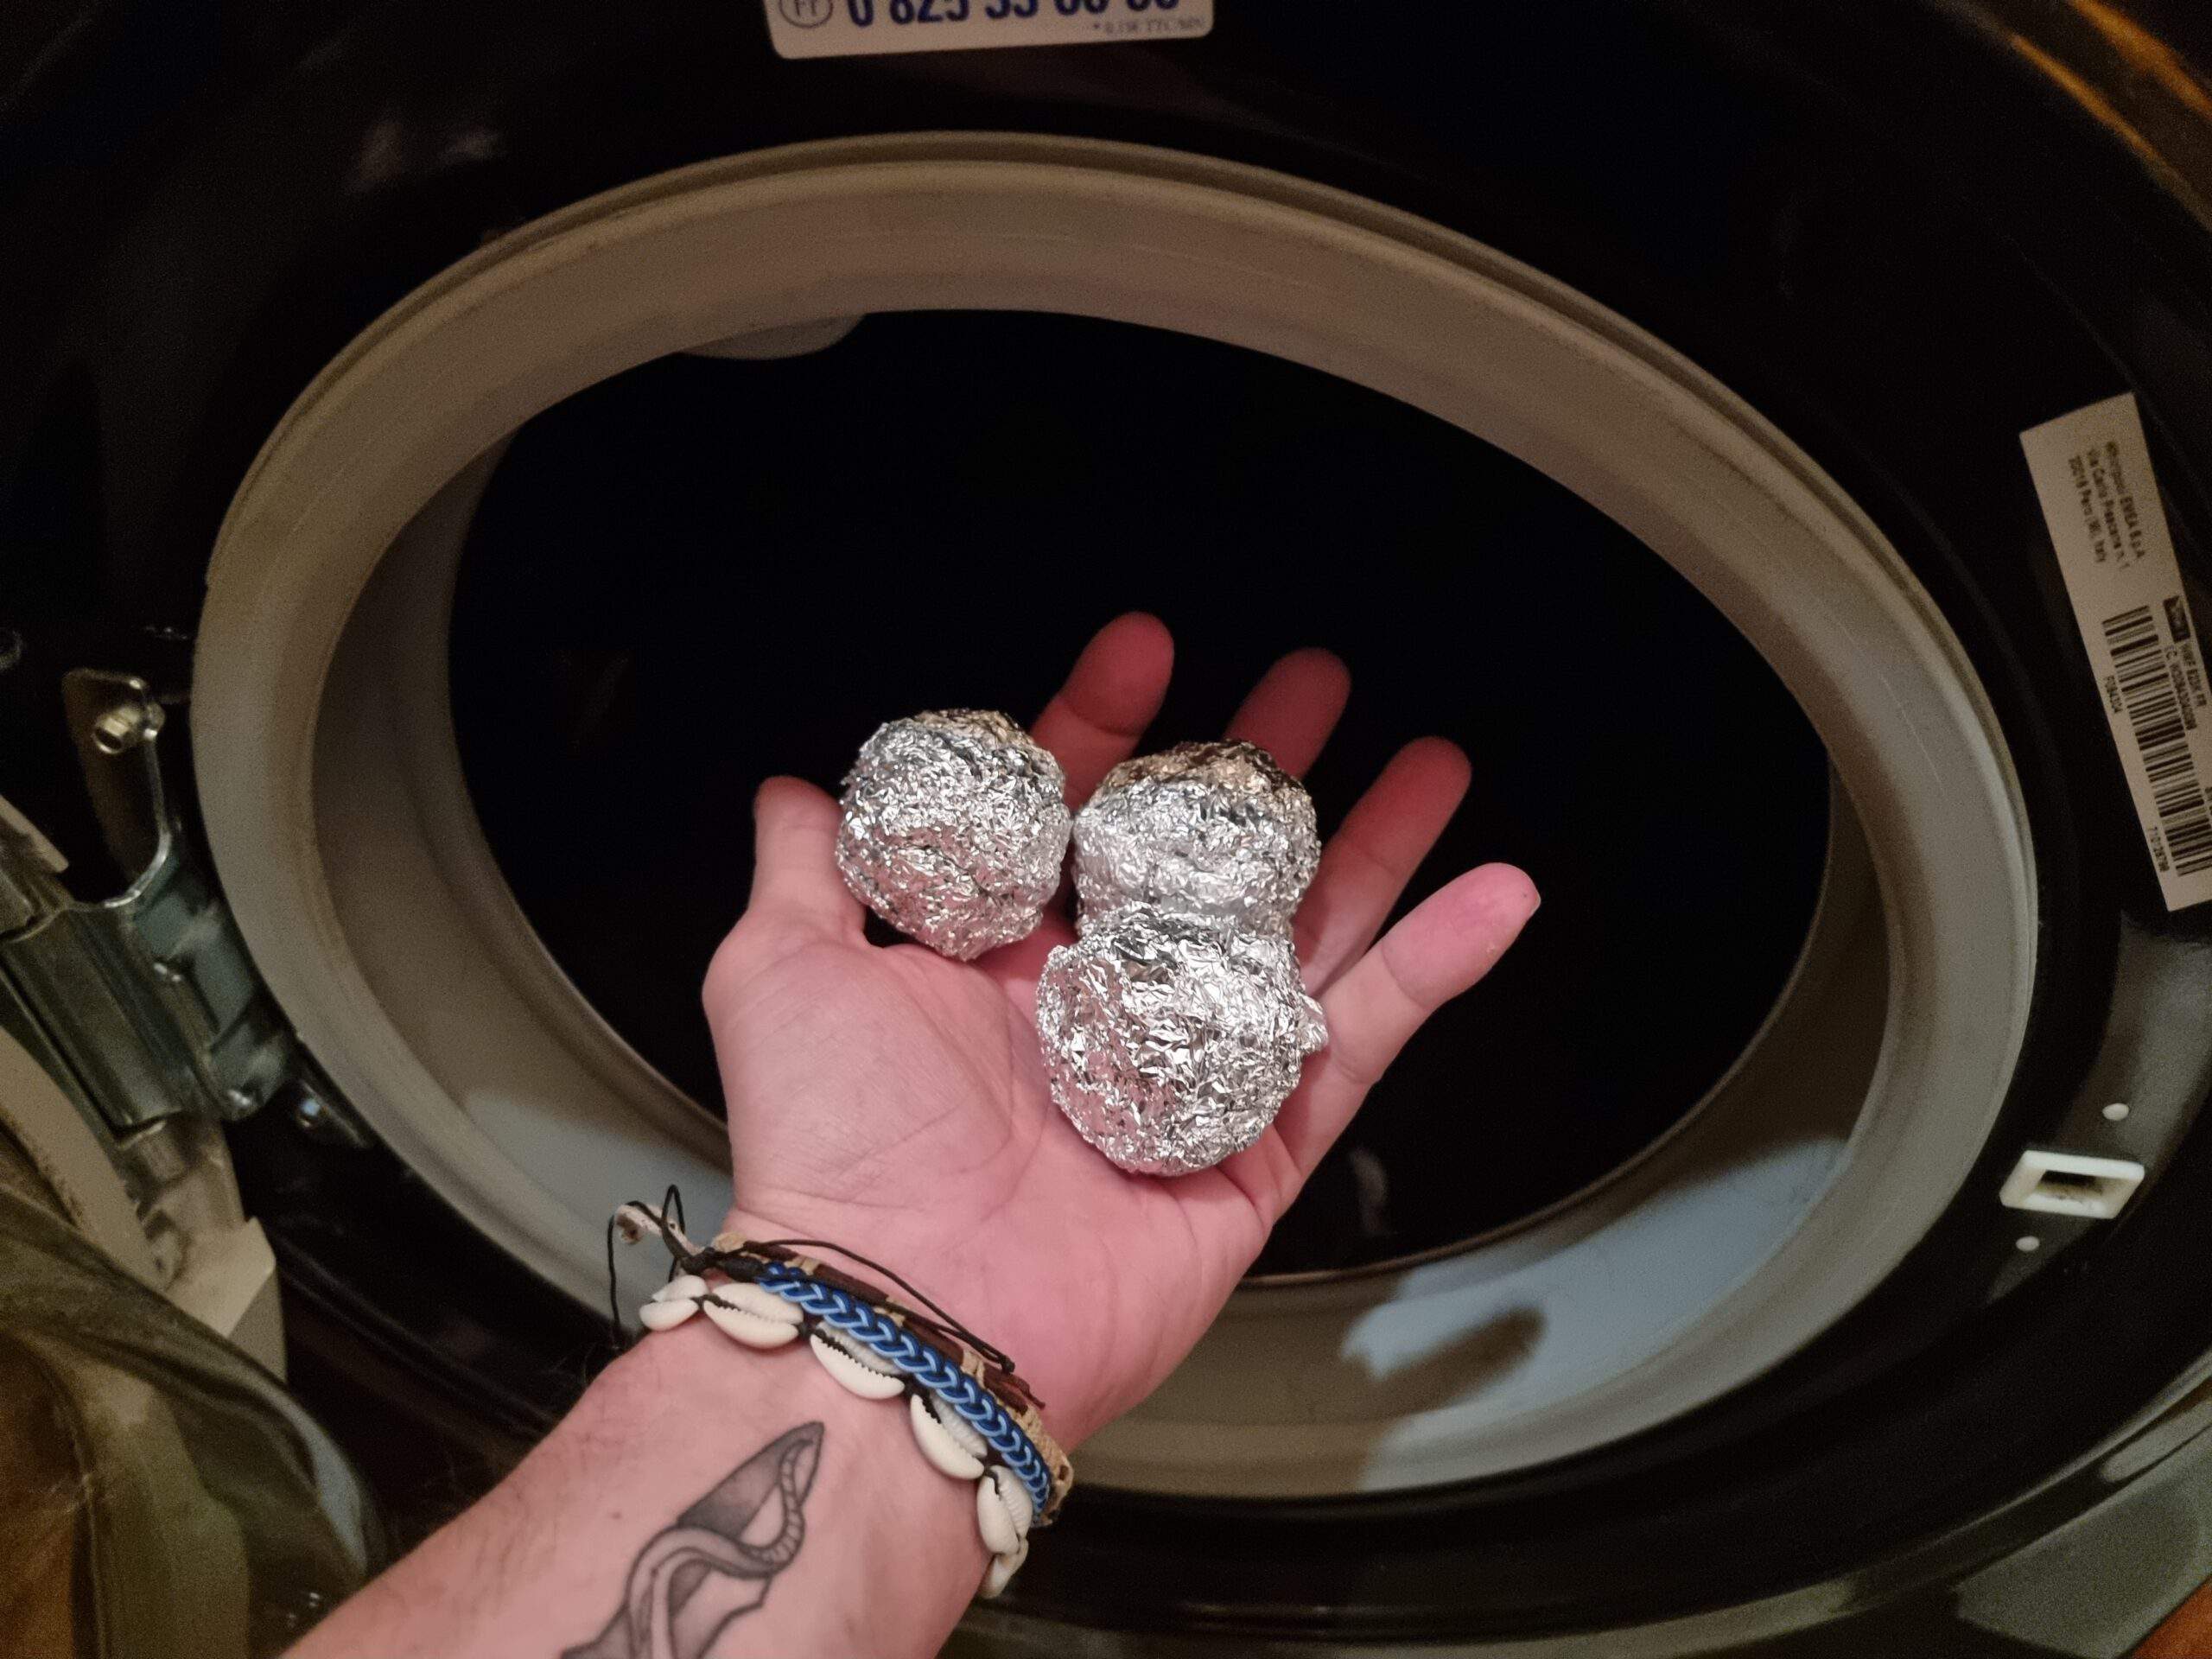 trois boules d'aluminium dans un lave linge